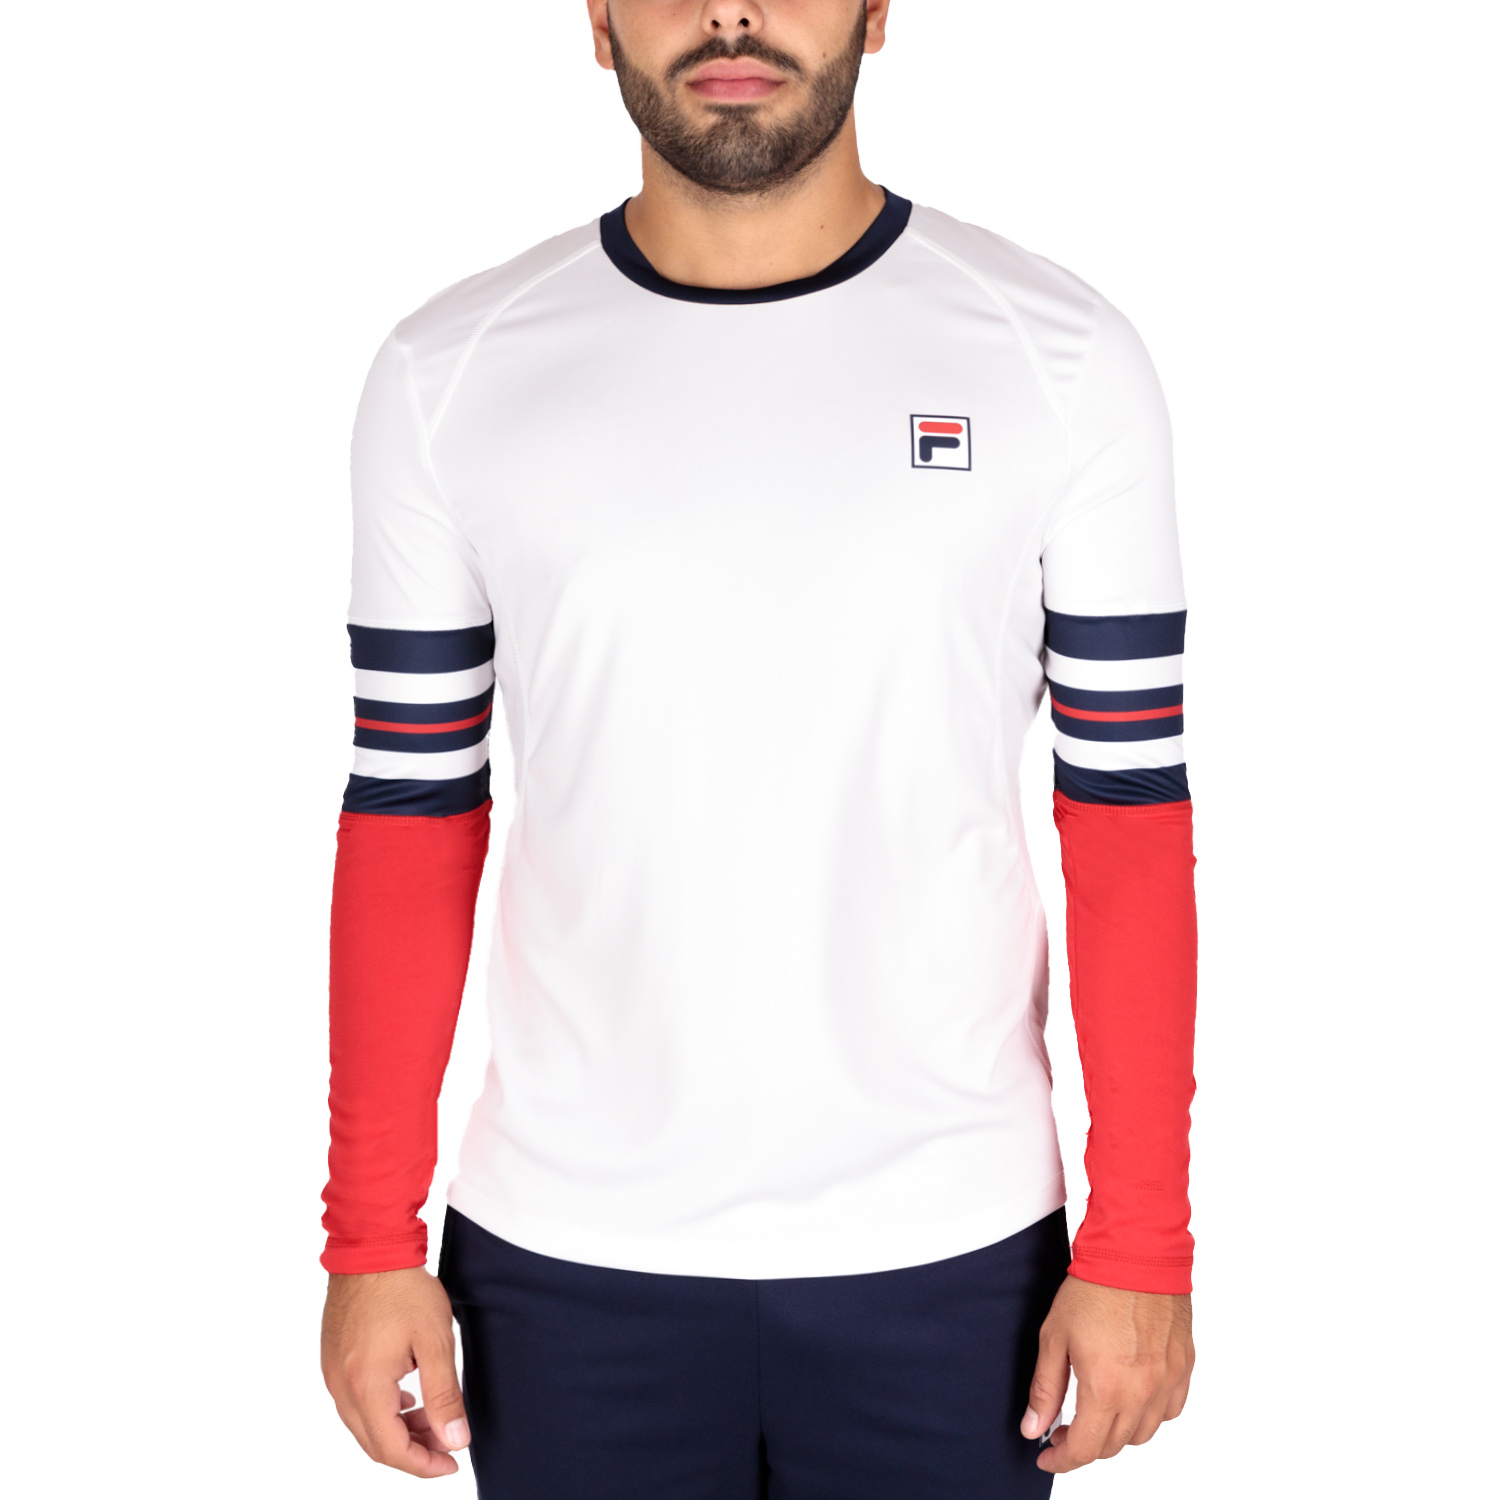 Tom Camisa de Hombre - White/Navy Comb